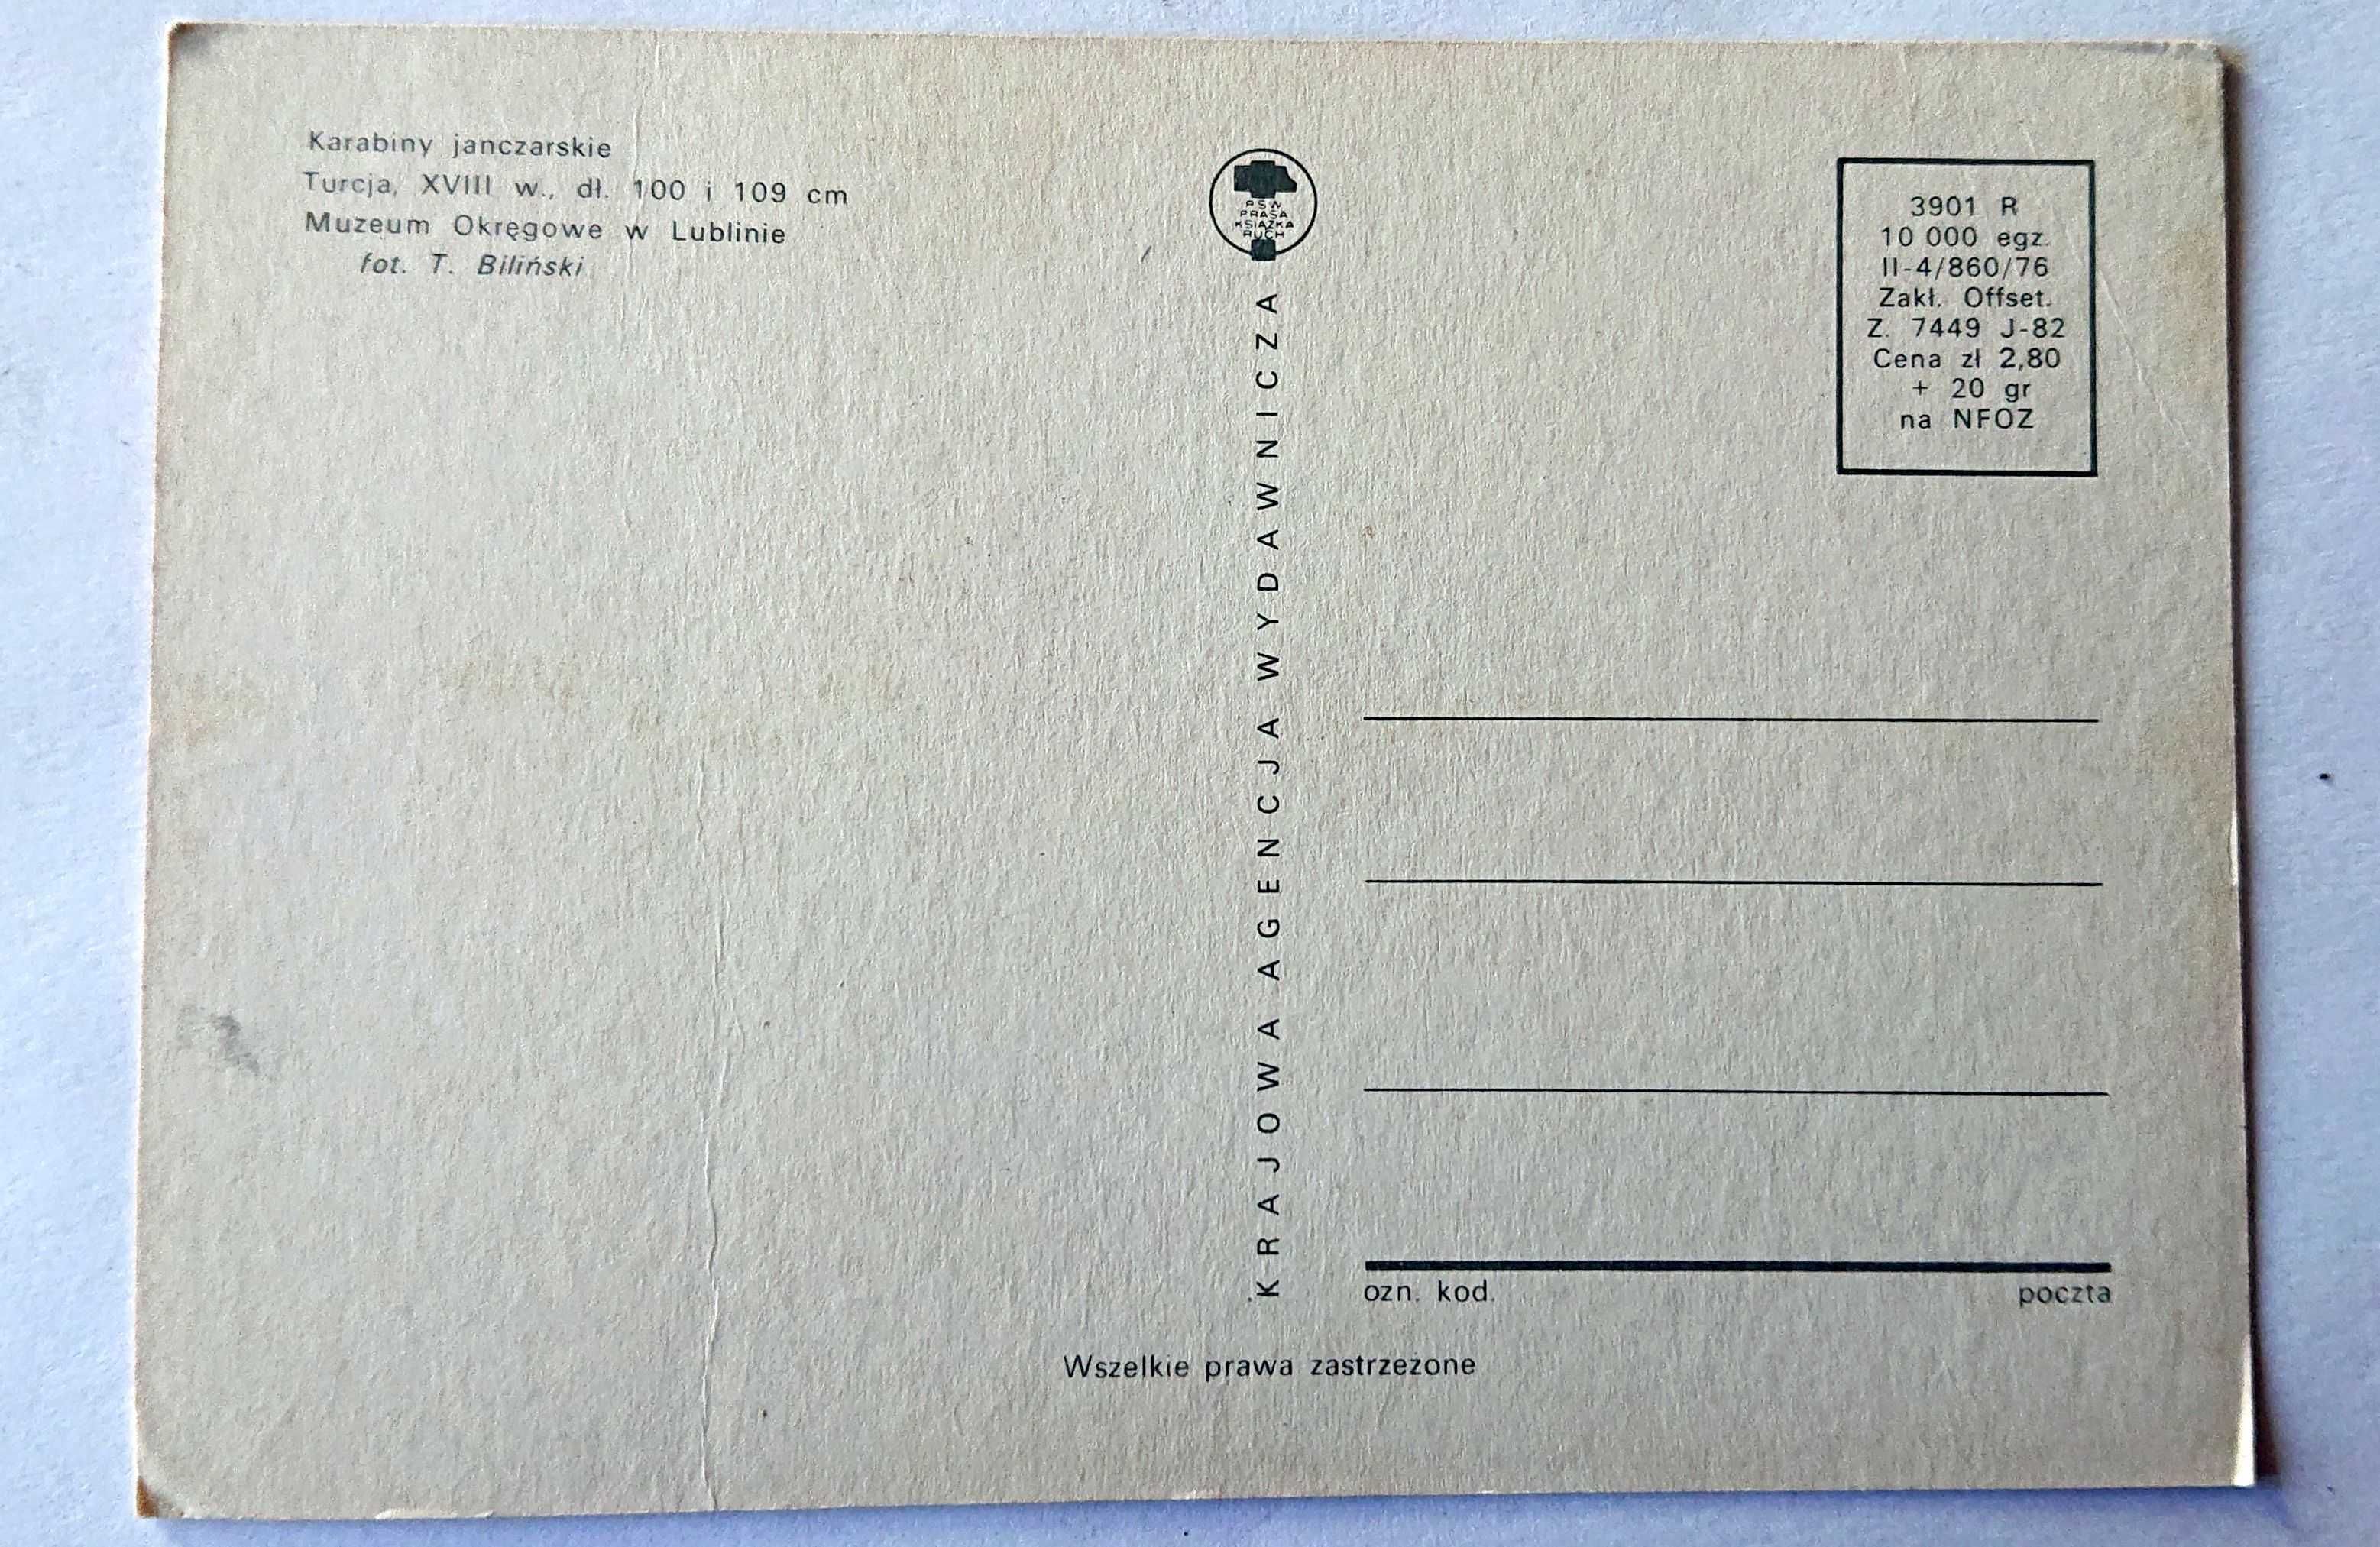 Kartka pocztowa - Karabiny janczarskie - RUCH - czysta 1976 r. - Nr 41